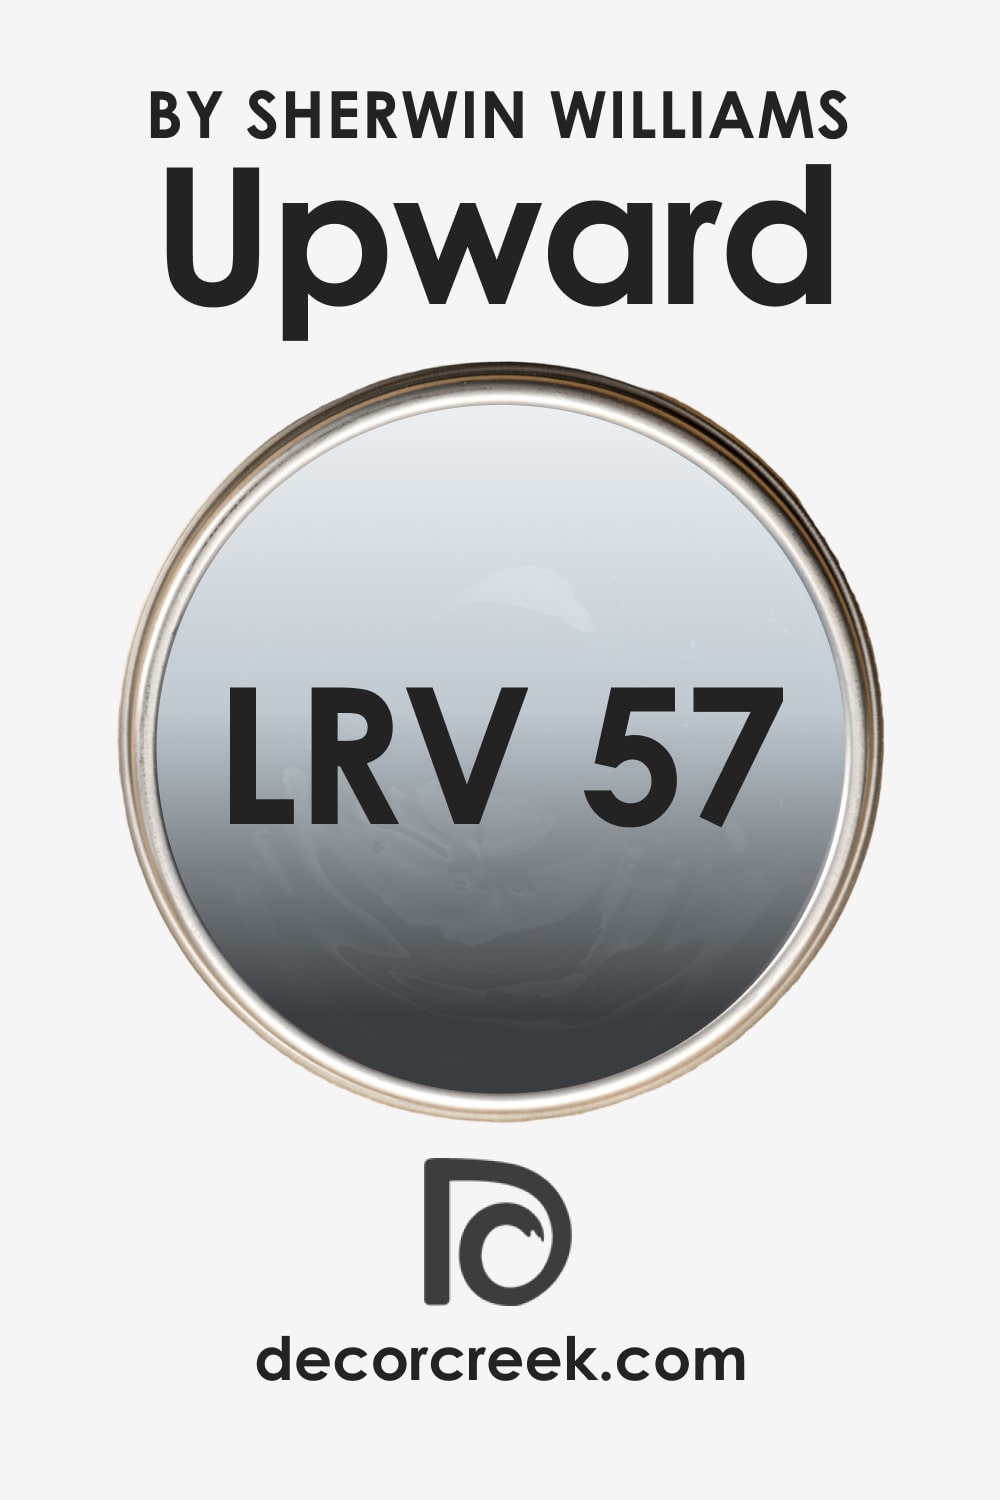 LRV Upward SW-6239 by Sherwin-Williams